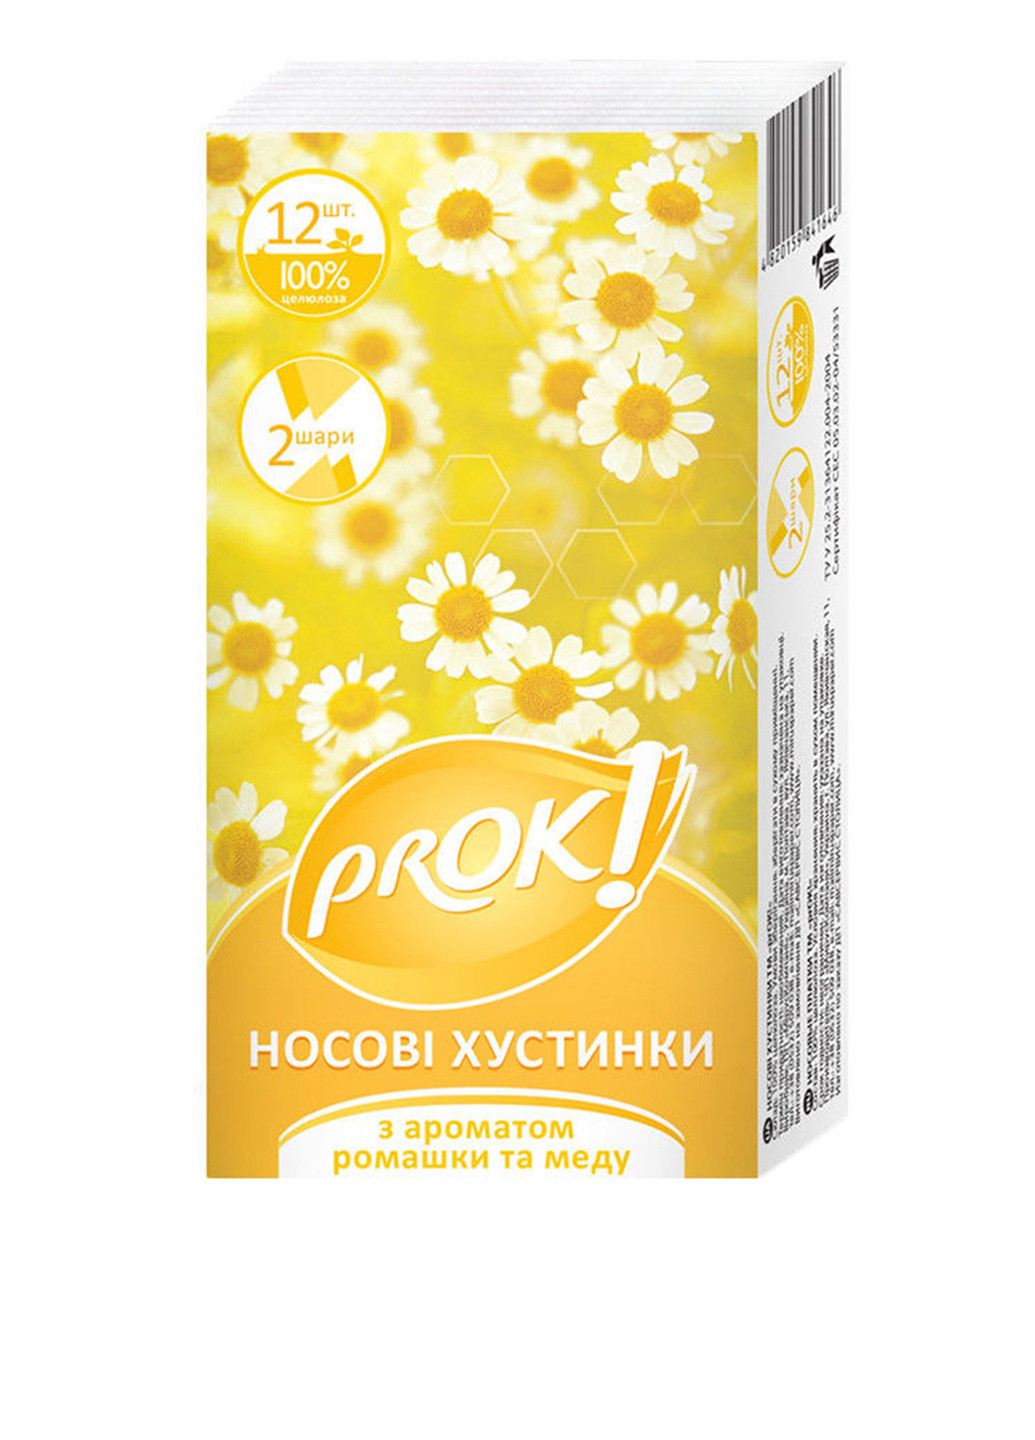 Салфетки с ароматом ромашки и меда (12 шт.) PrOK (89127003)